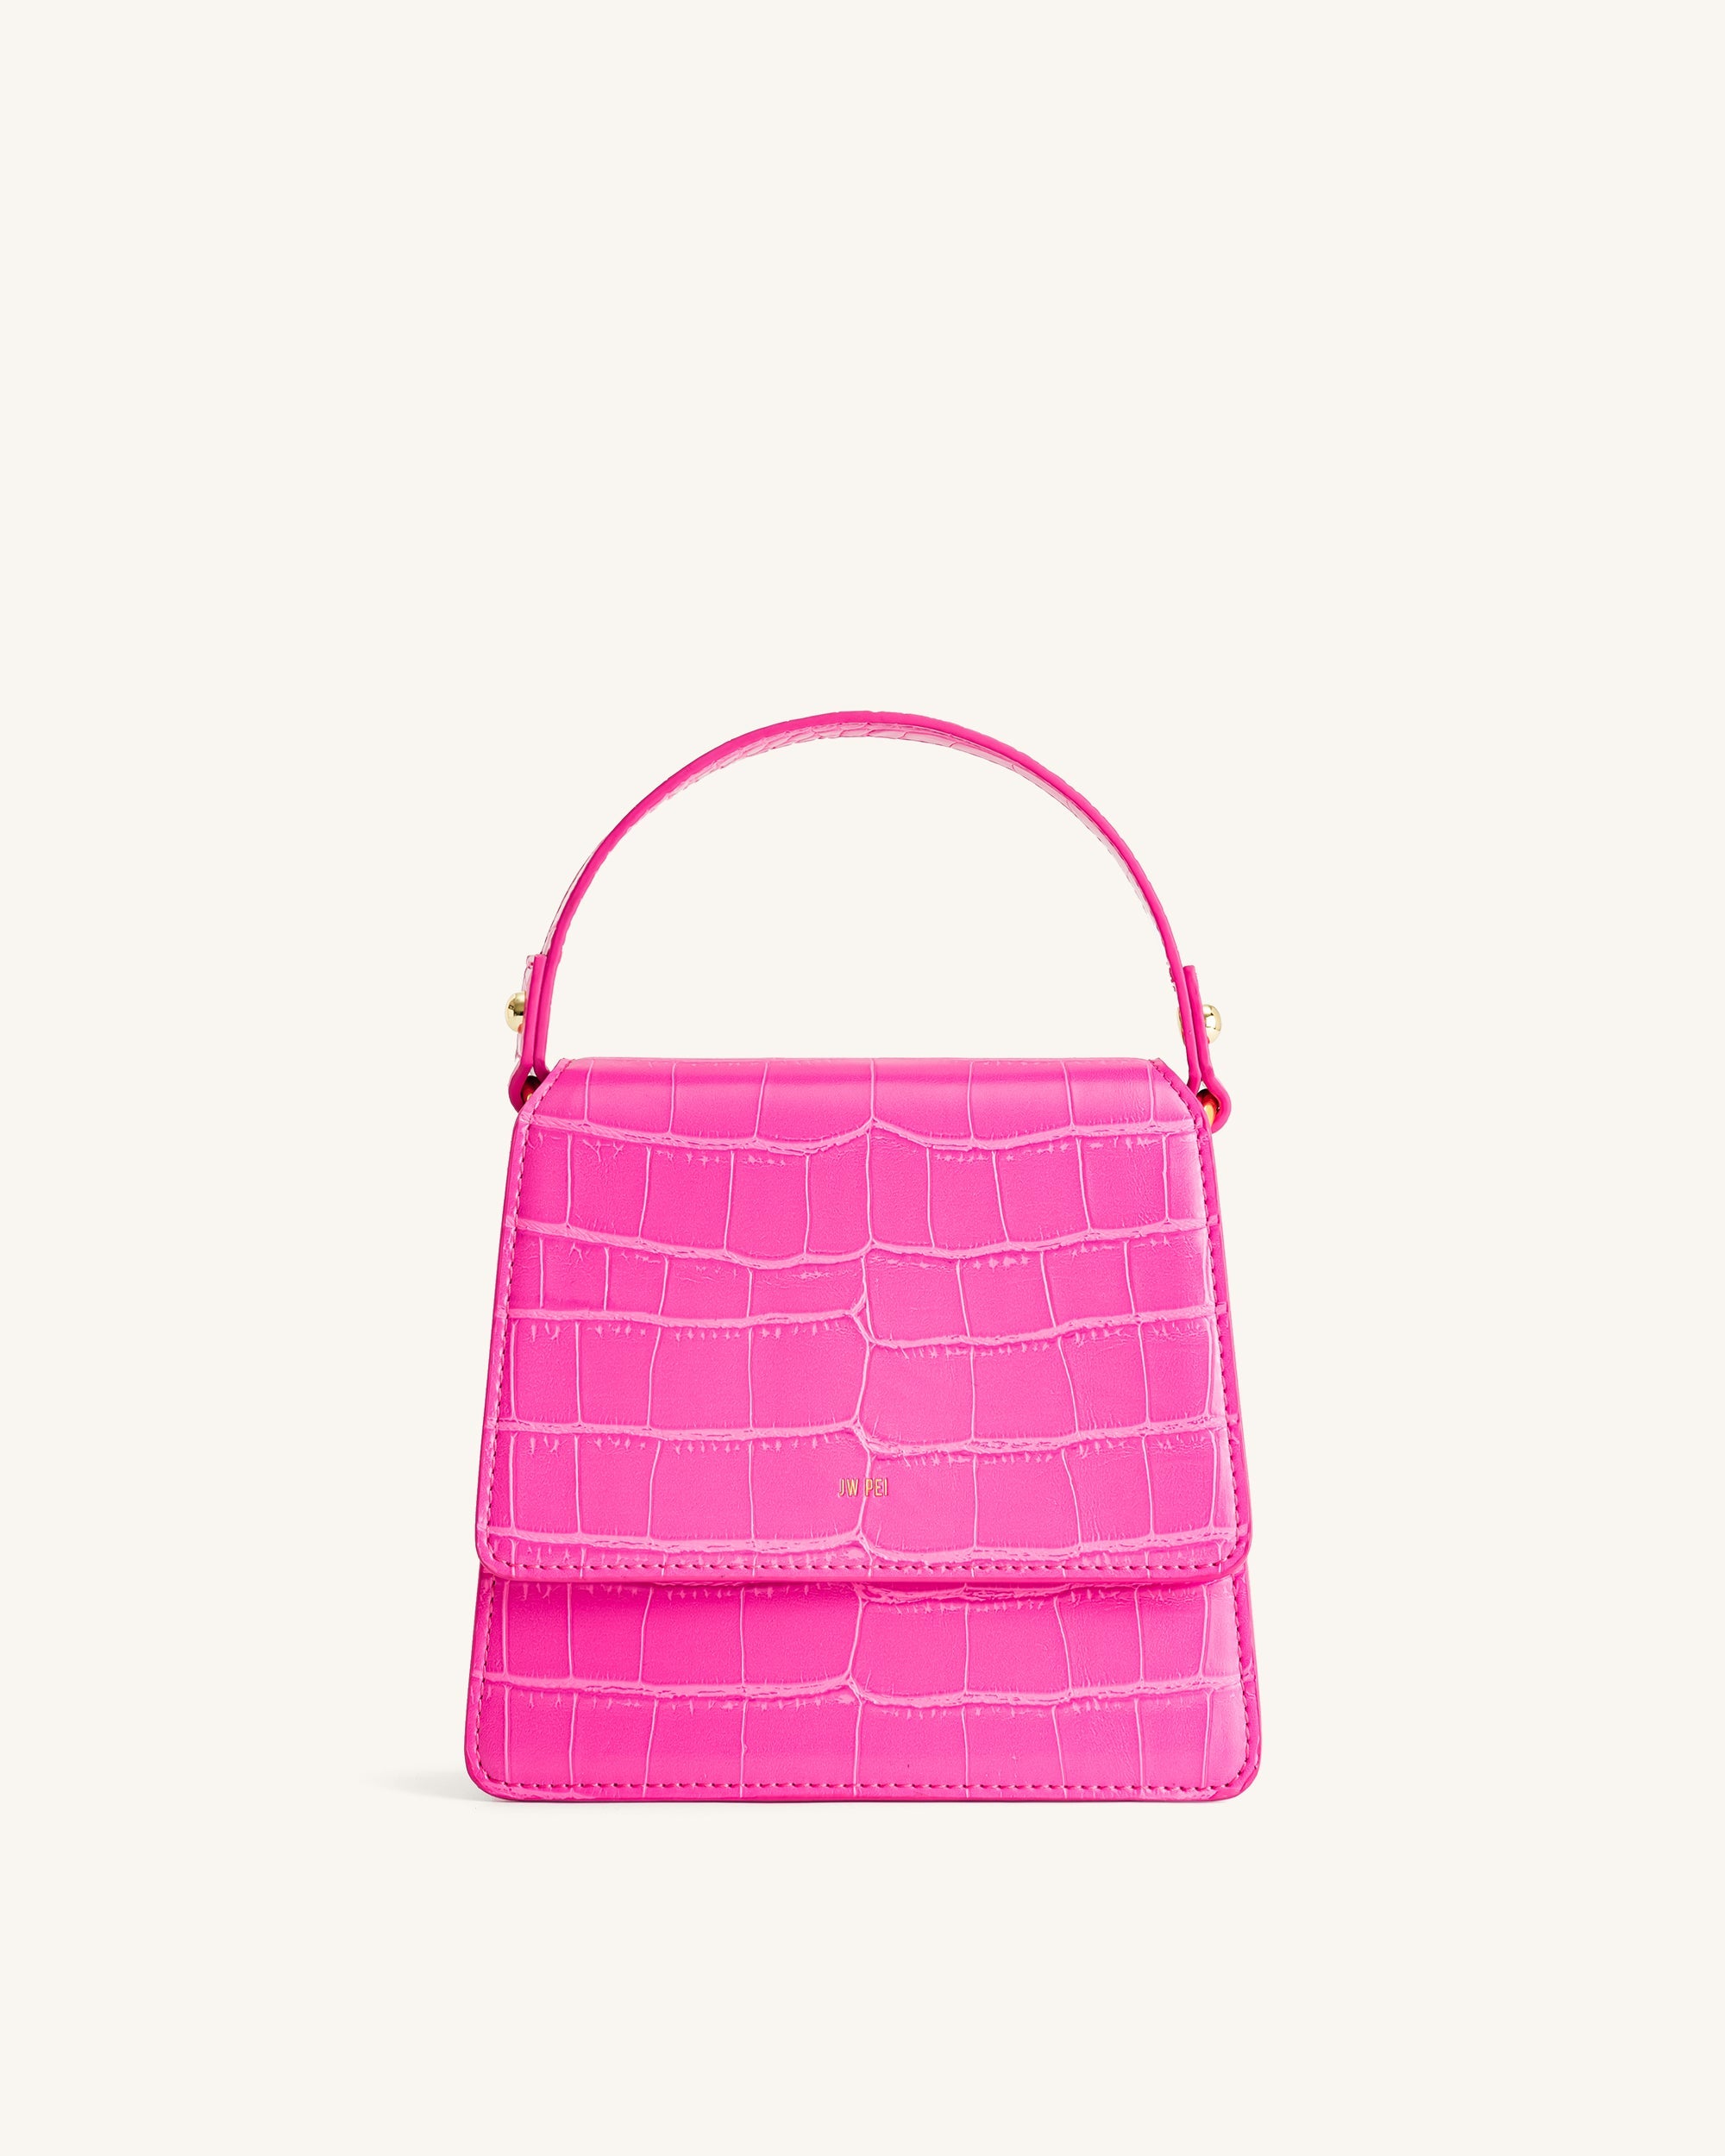 Fae 手提包 - 亮粉色鱷魚紋